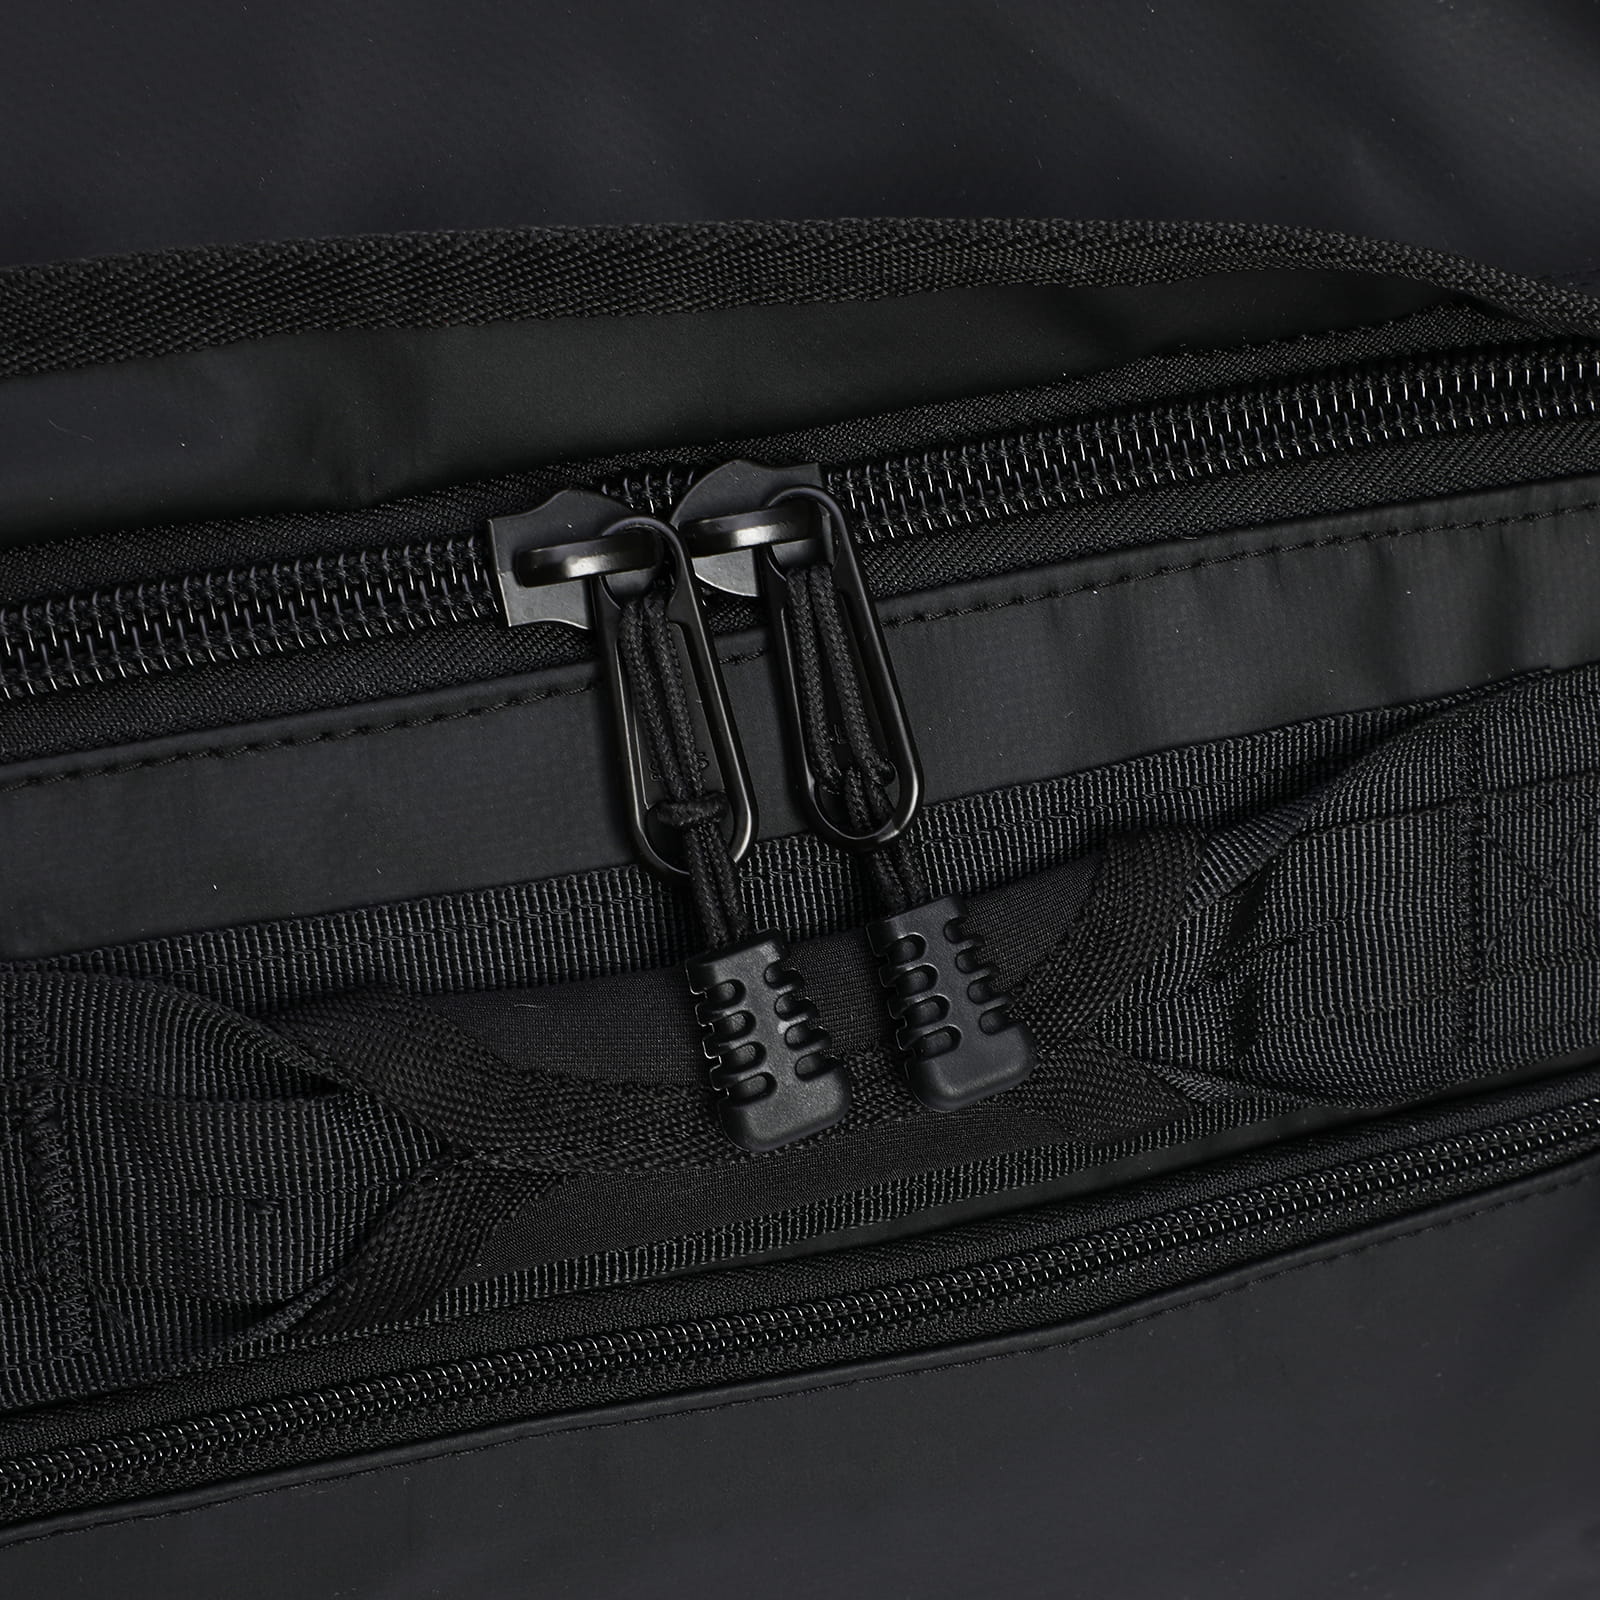 MIER Large Duffel Bag Men's Gym Bag with Shoe Compartment, 60L, Black